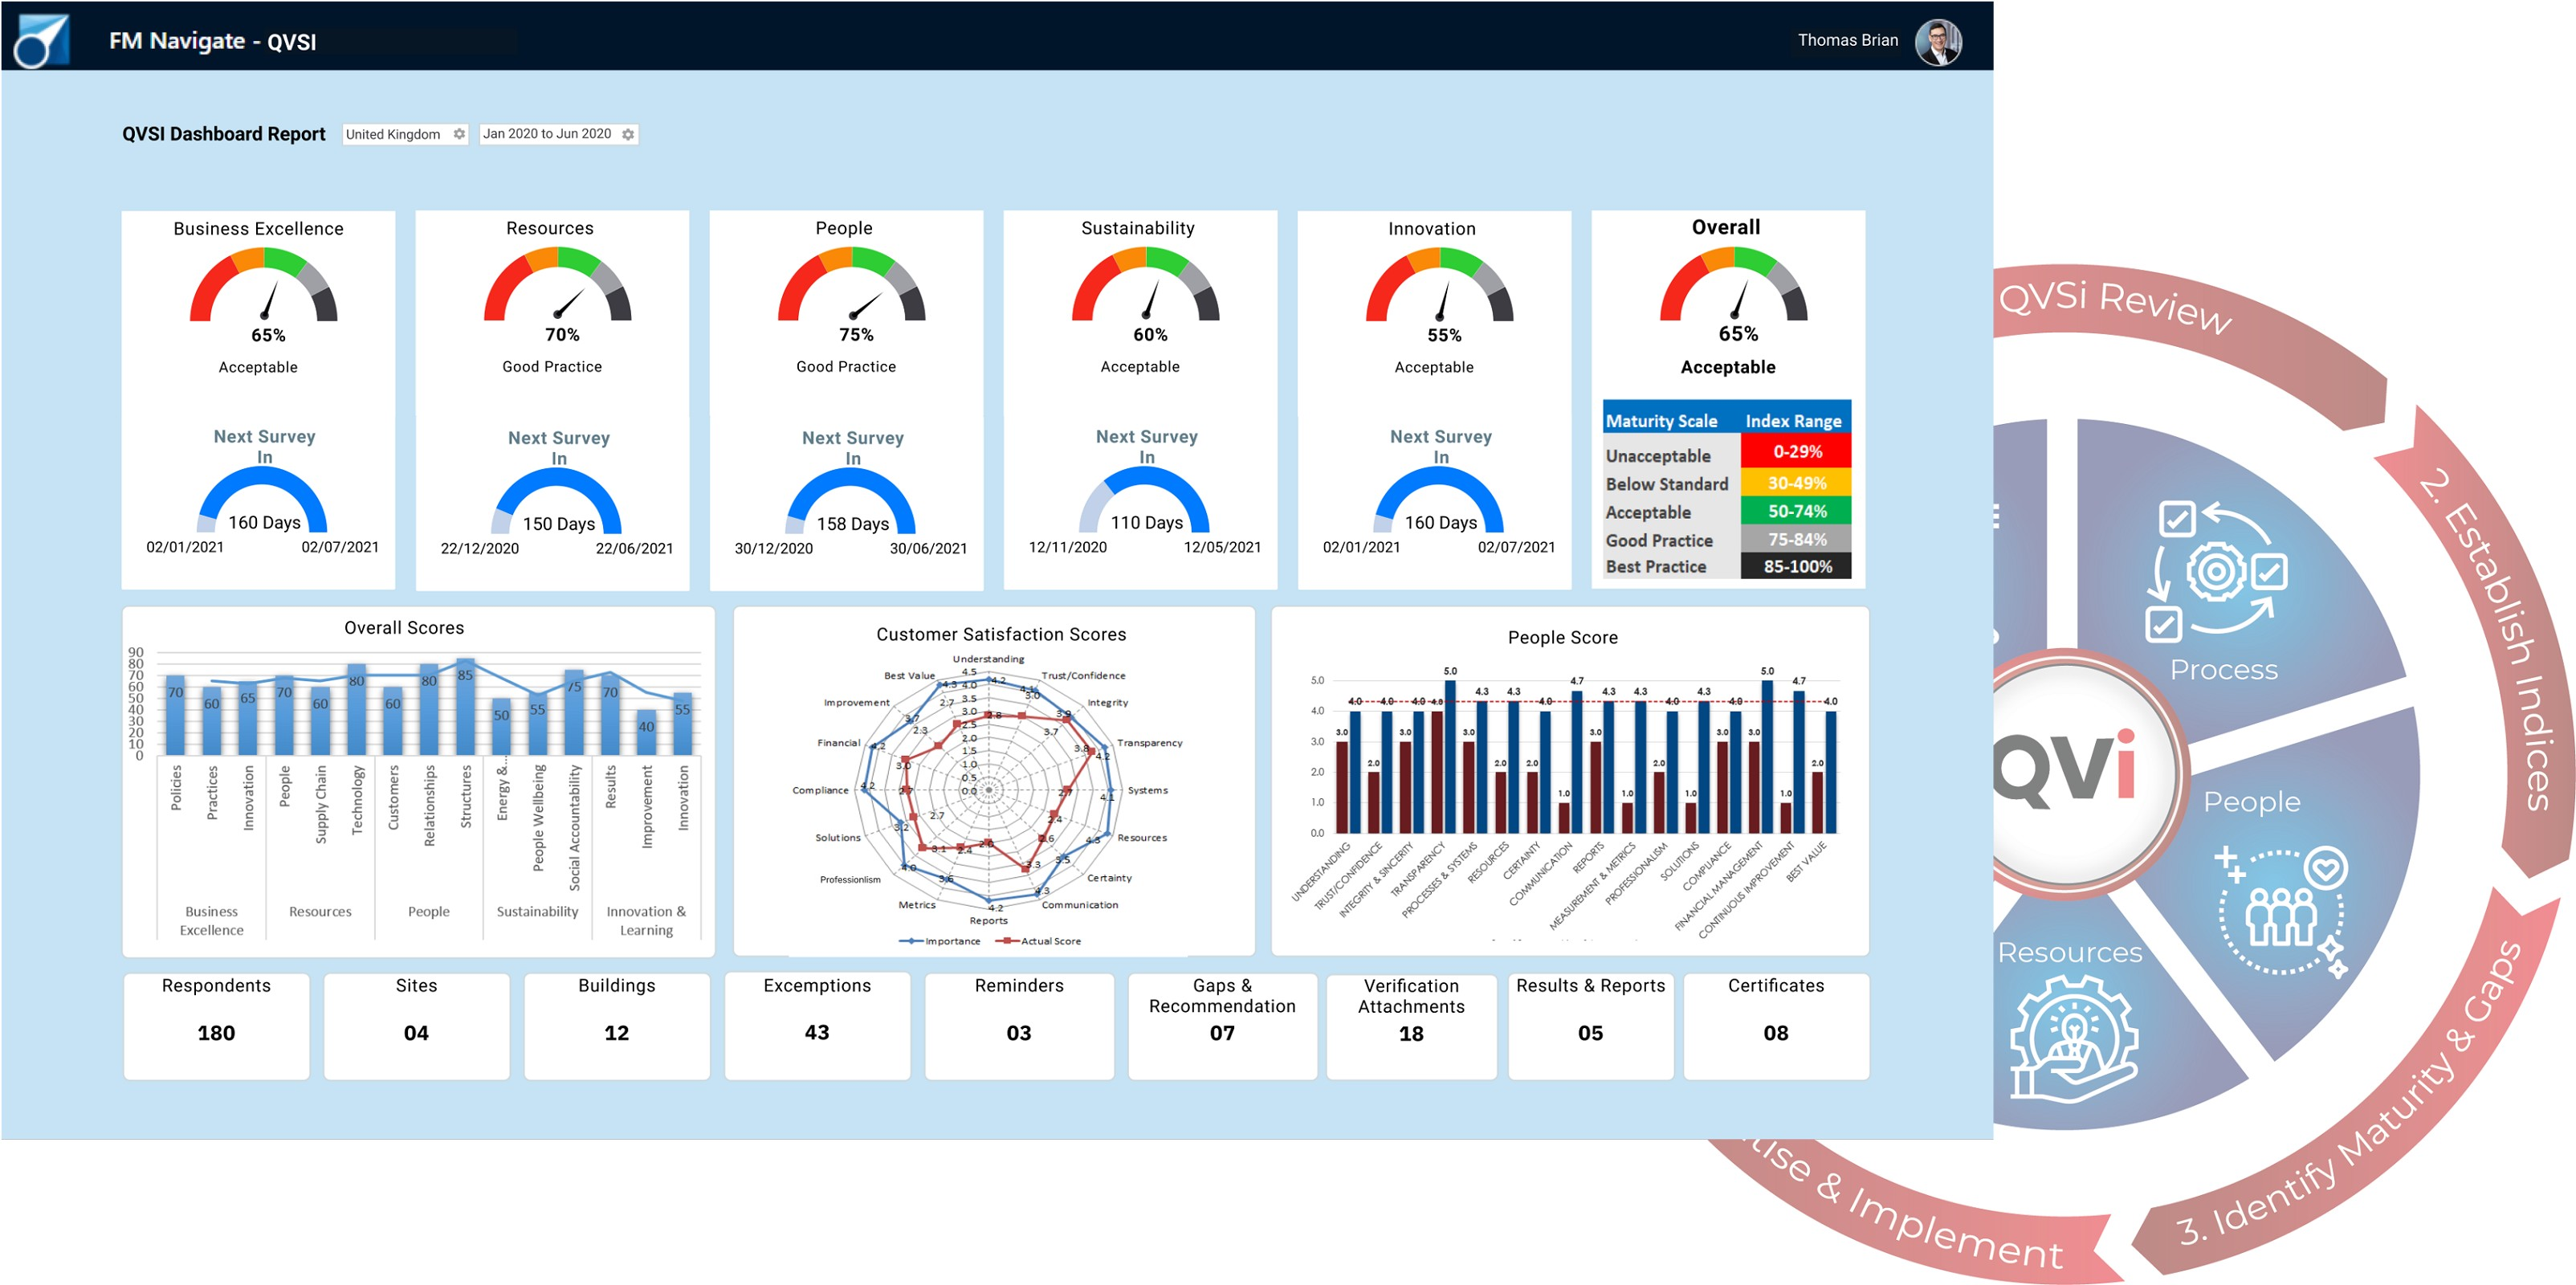 FM Navigate-QVi Continuous Improvement-Facilities Management Software-Dashboard